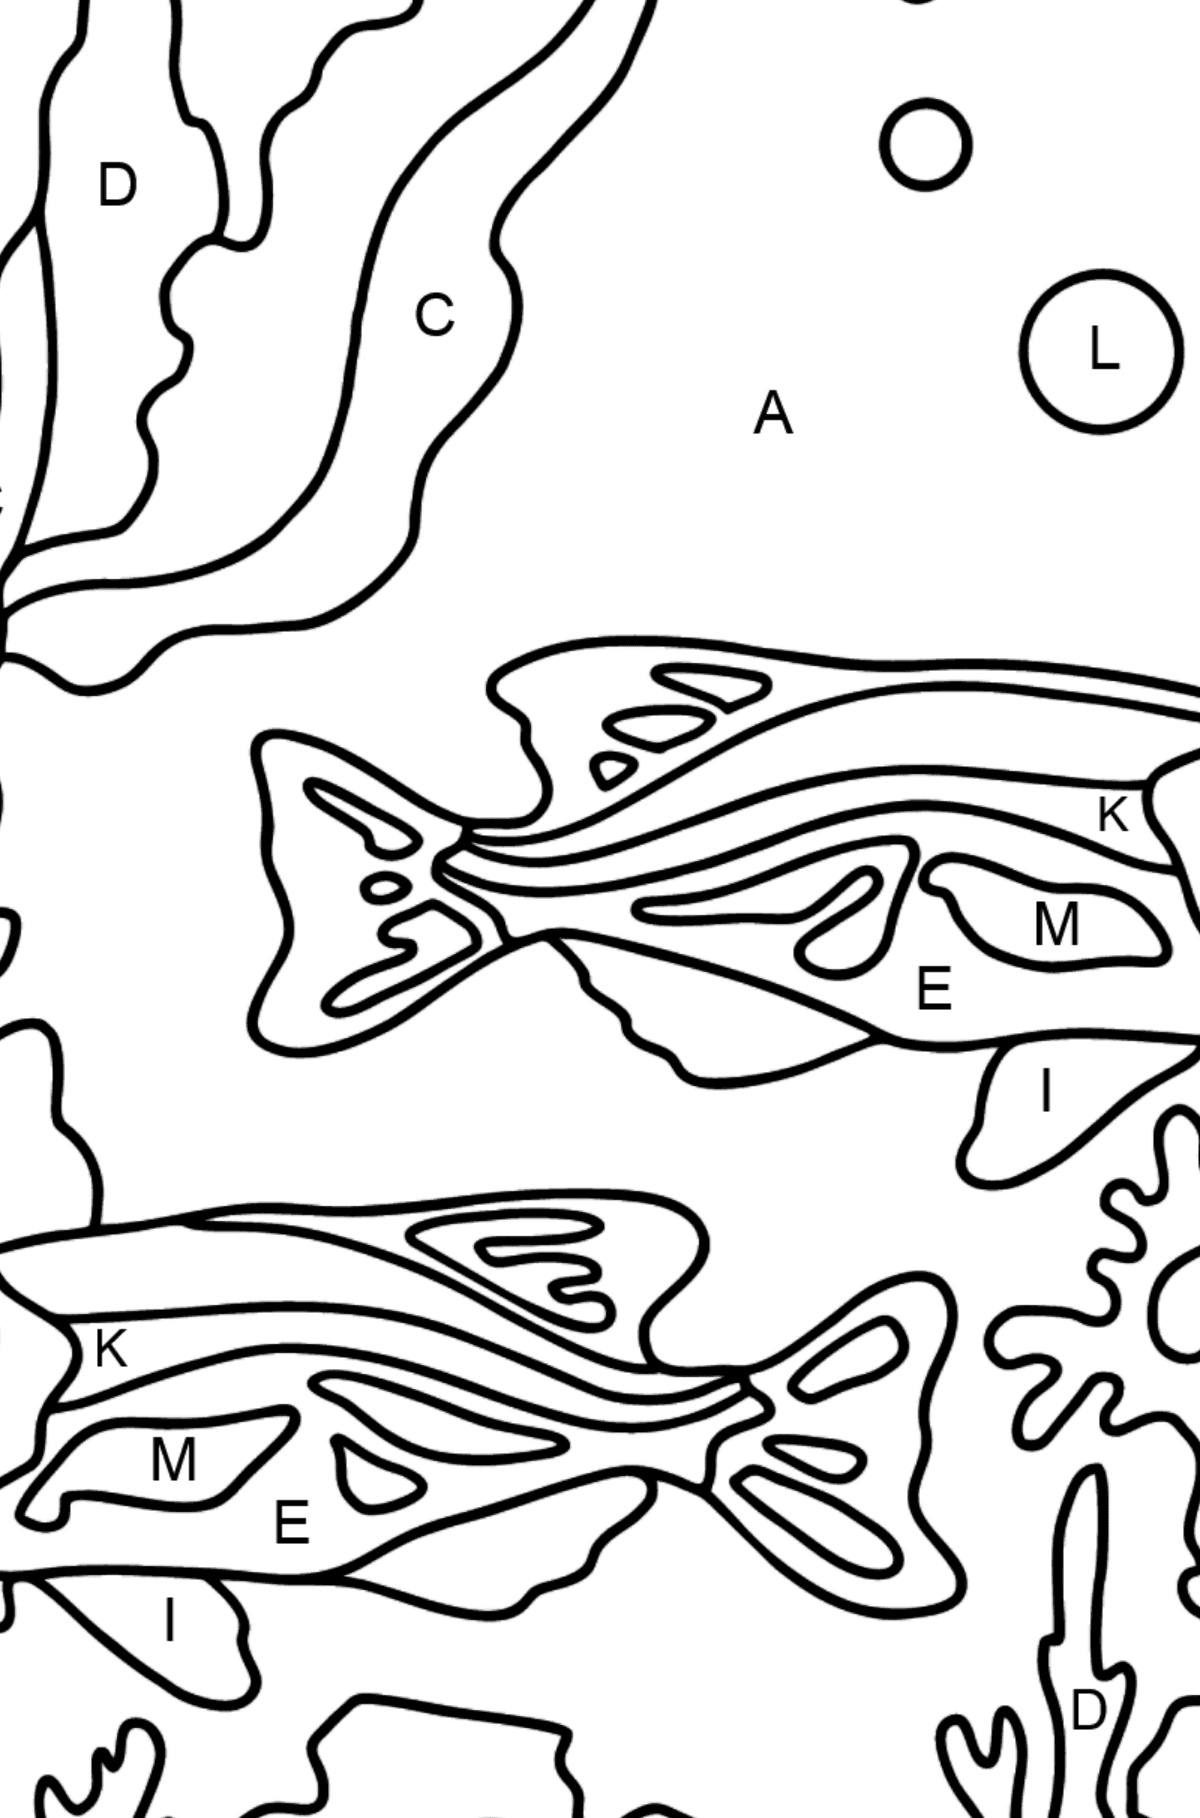 Dibujo para Colorear - Los Peces están Nadando Juntos Pacíficamente - Colorear por Letras para Niños